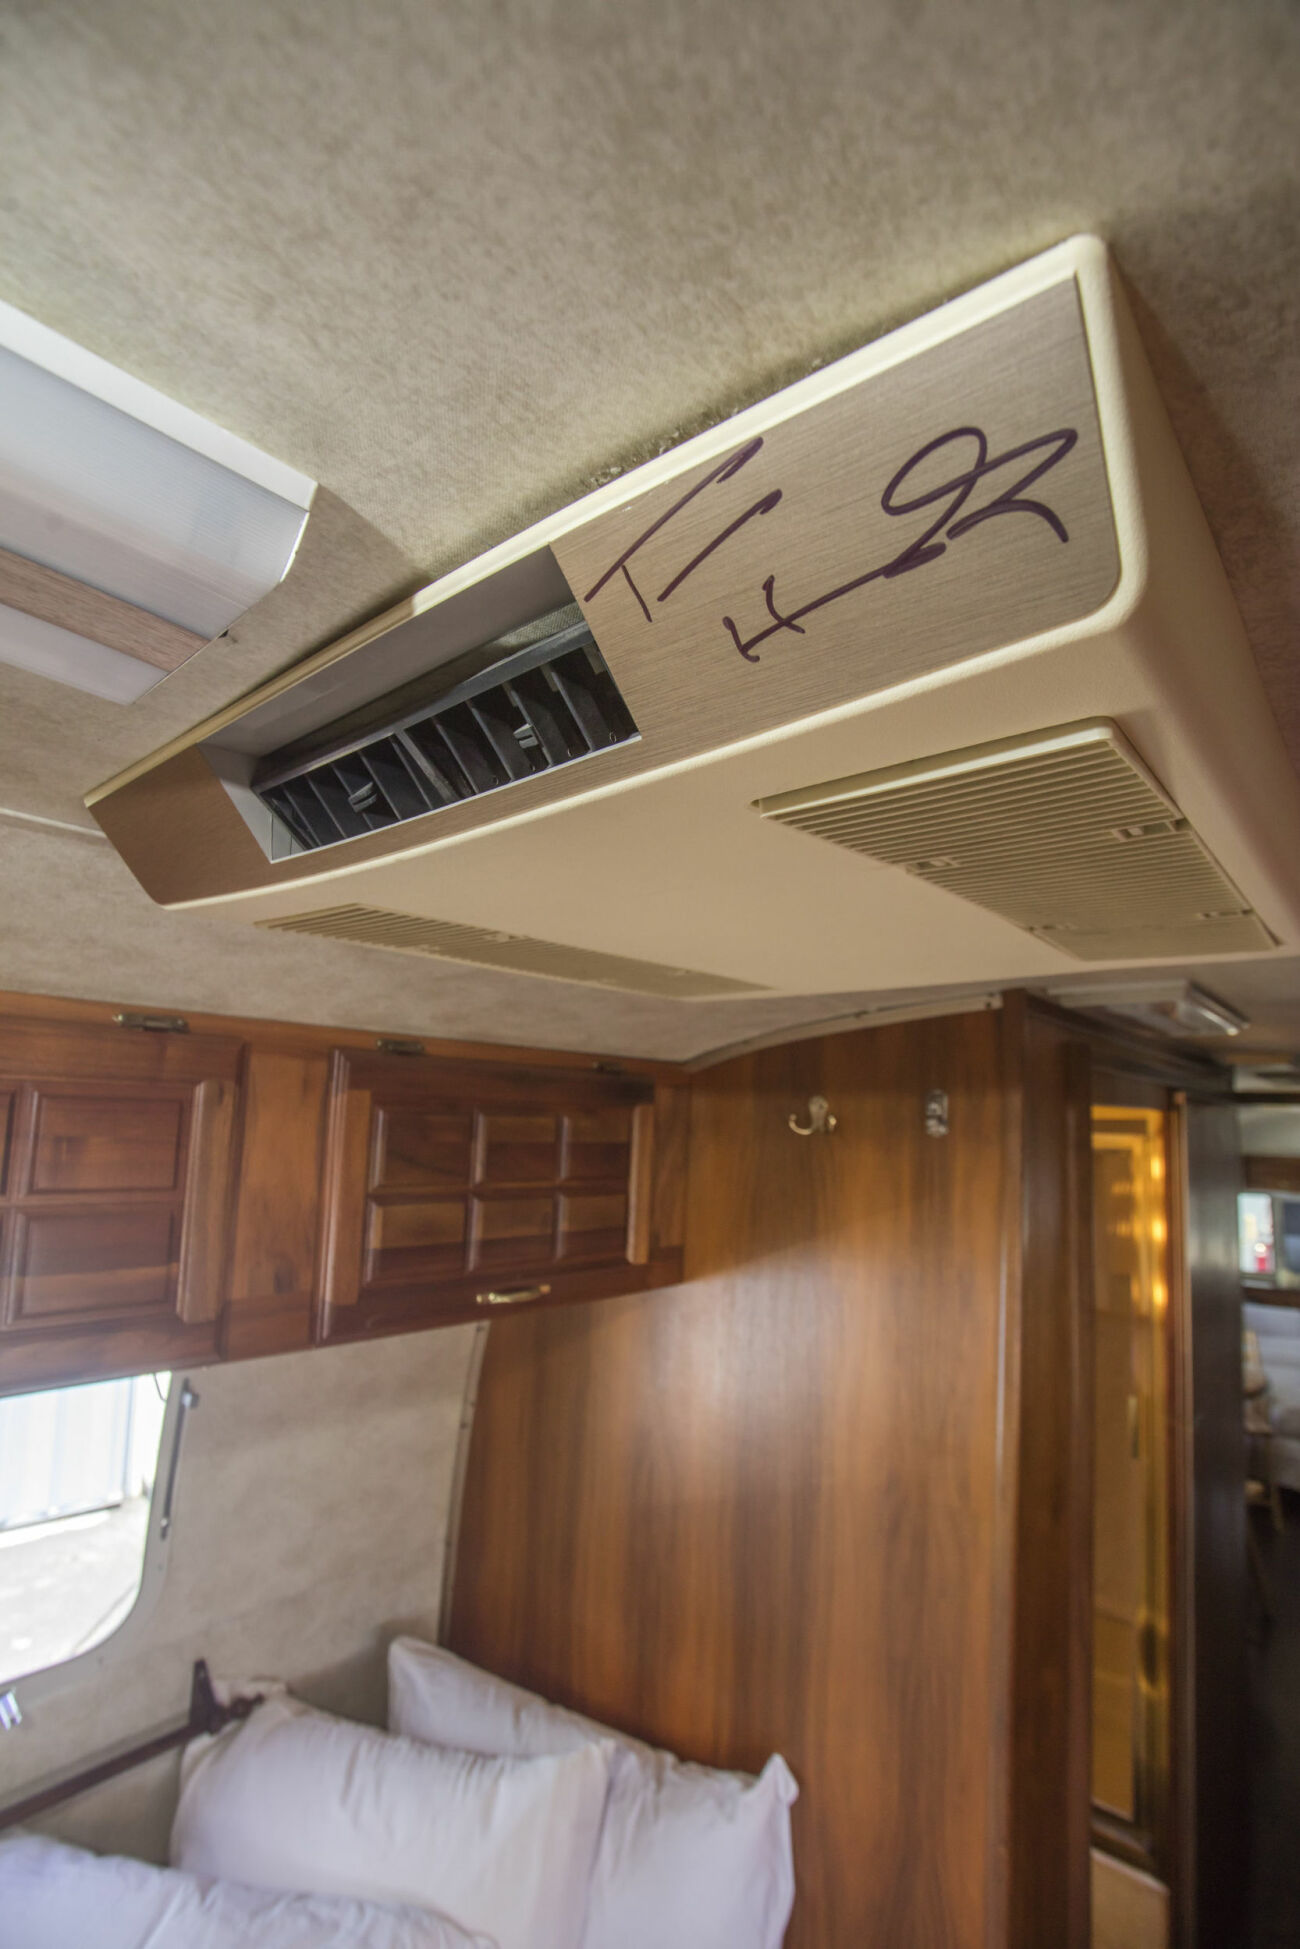 Tom Hanks har signerat sin husvagn av modellen 1992 Airline, som är till salu.